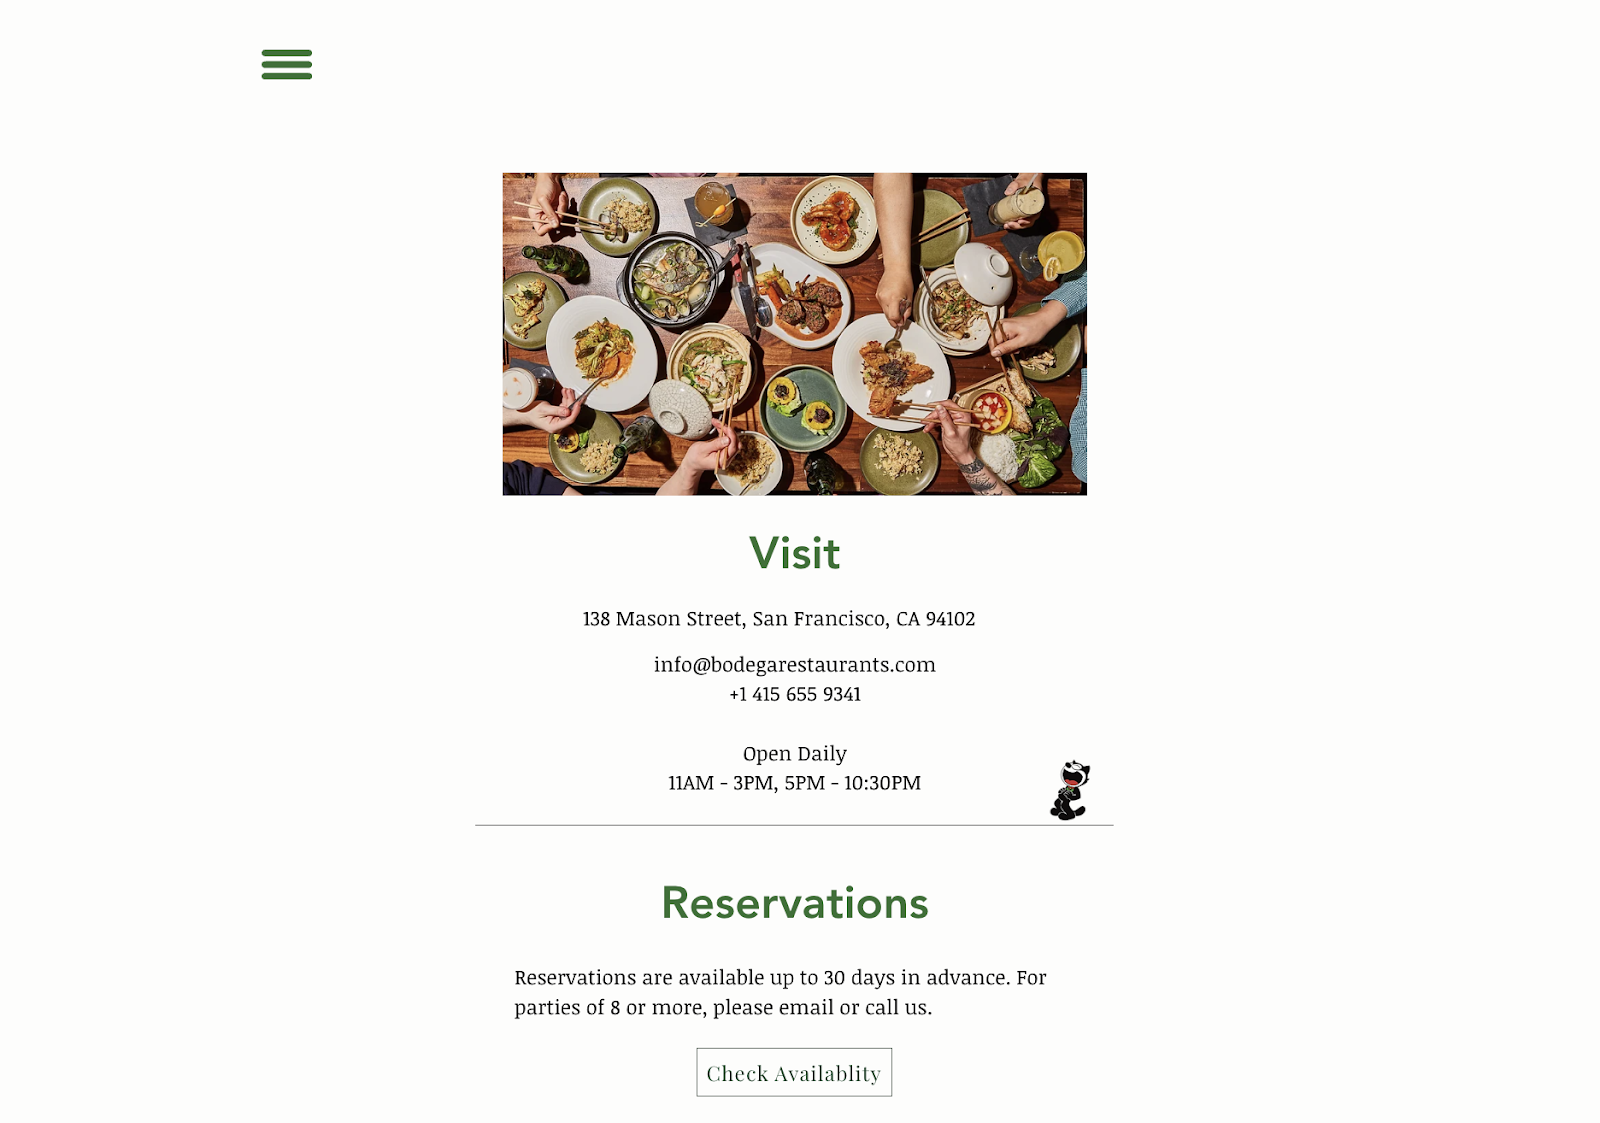 Restaurantmarketingideeën: een eenvoudige website voor restaurant Bodega in San Francisco. De webpagina bevat contactgegevens, openingstijden en een reserveringslink.